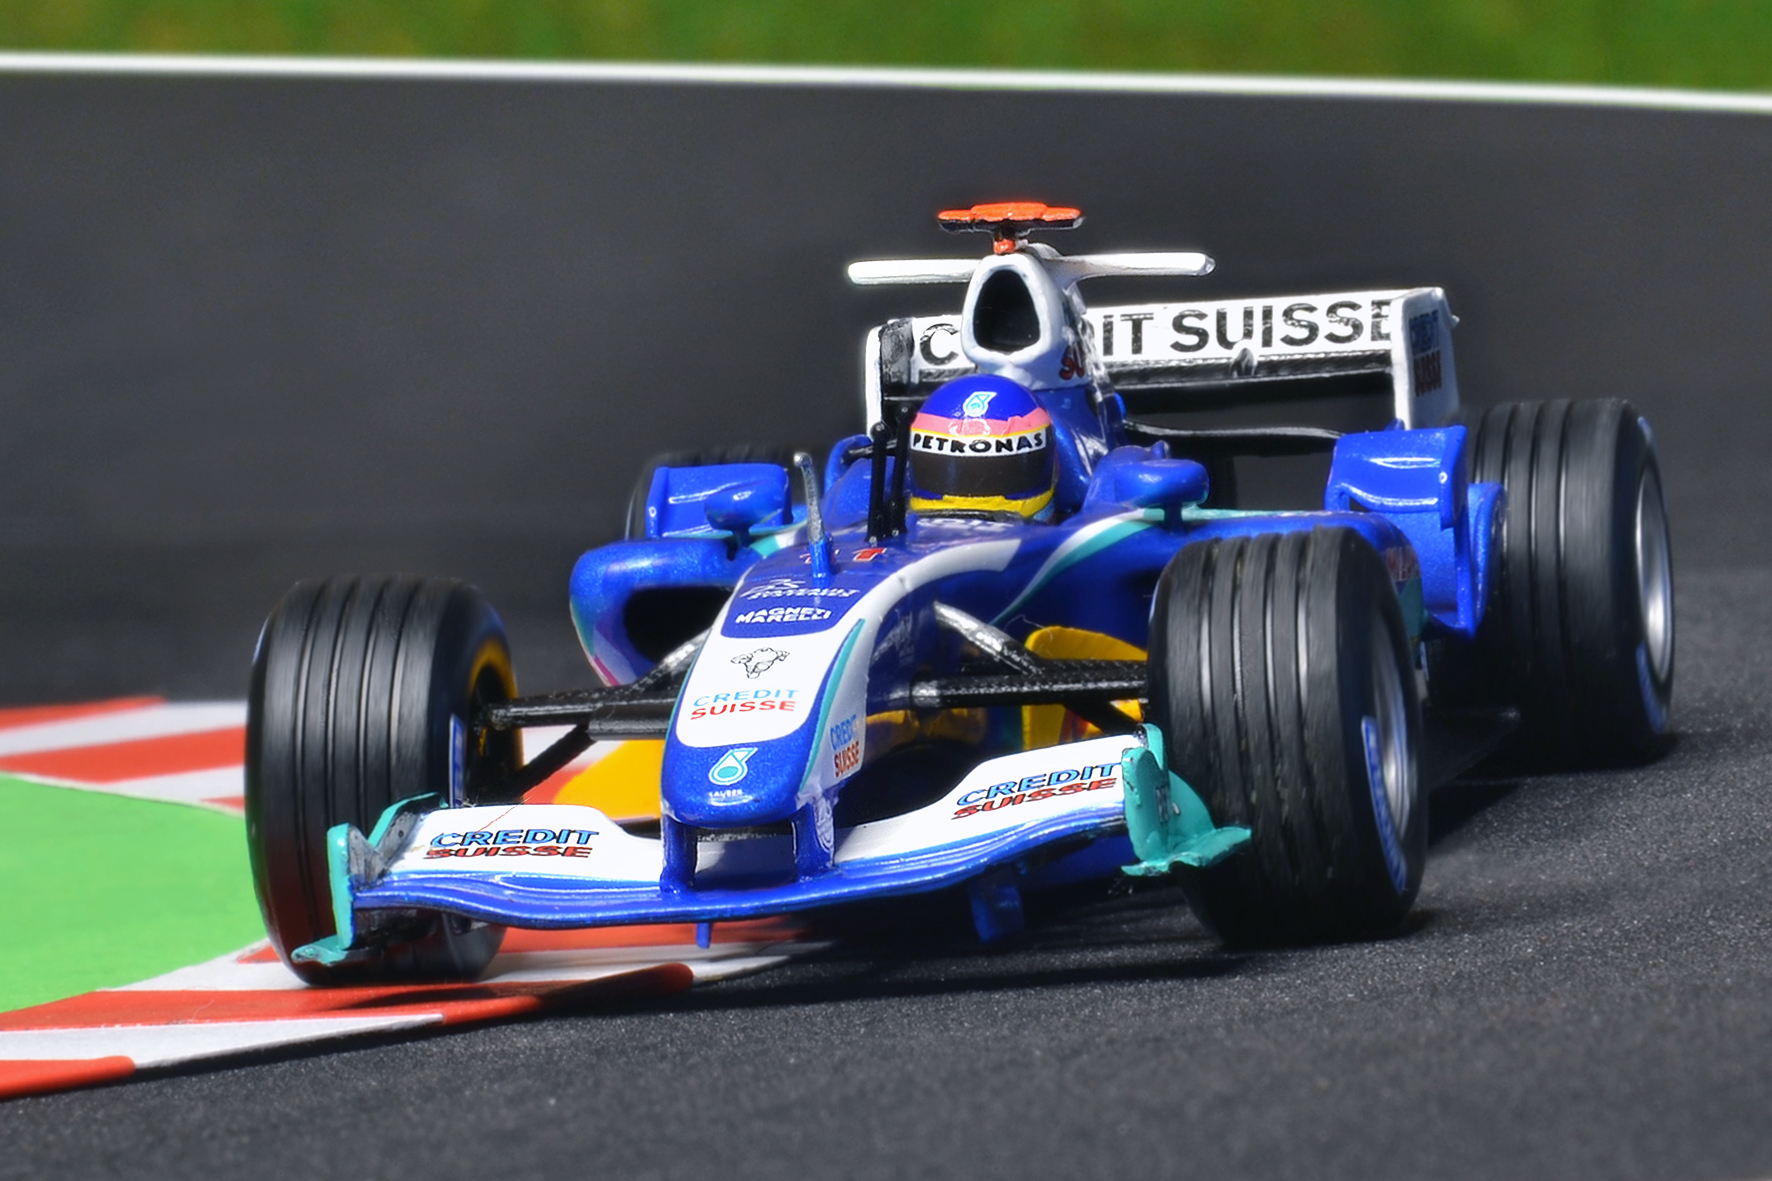 Sauber C24 Jacques Villeneuve 2005 - Minichamps 1:43